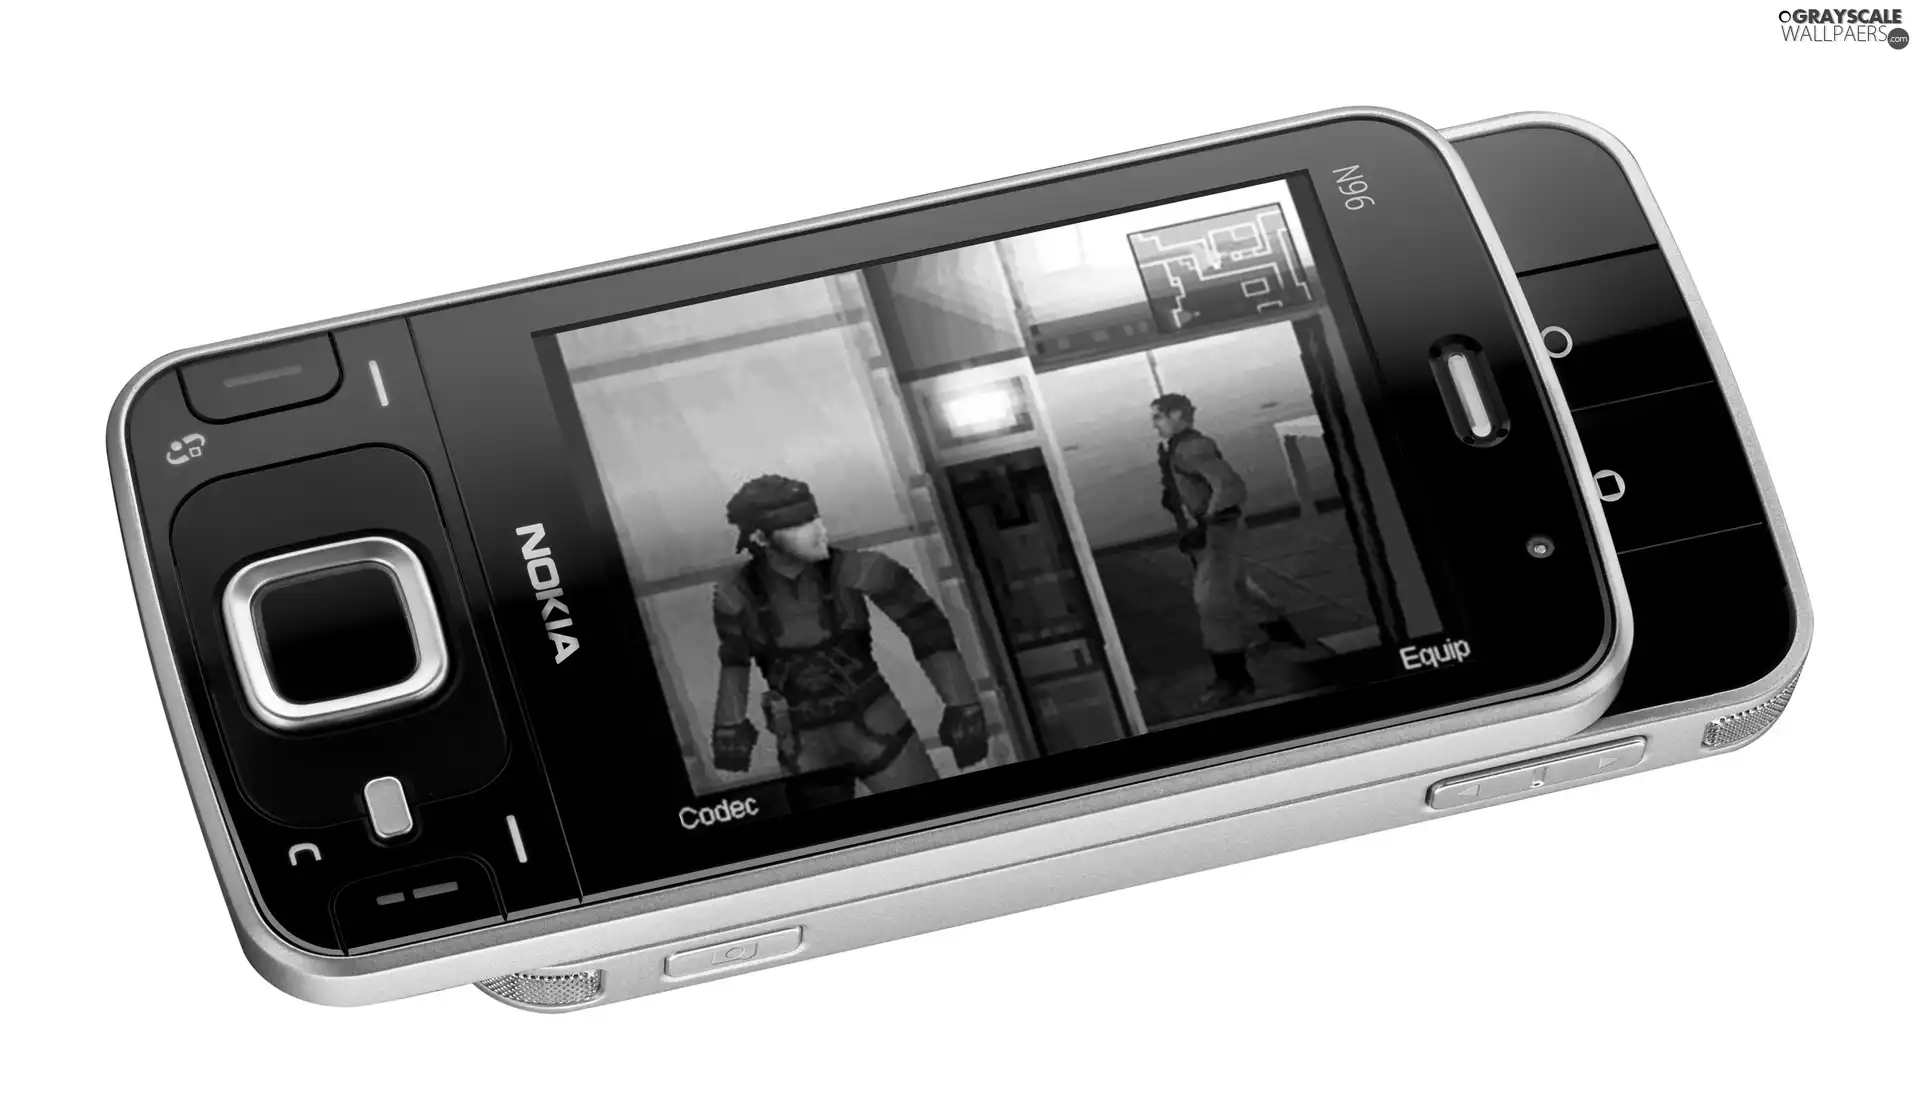 Games, Nokia N96, Display